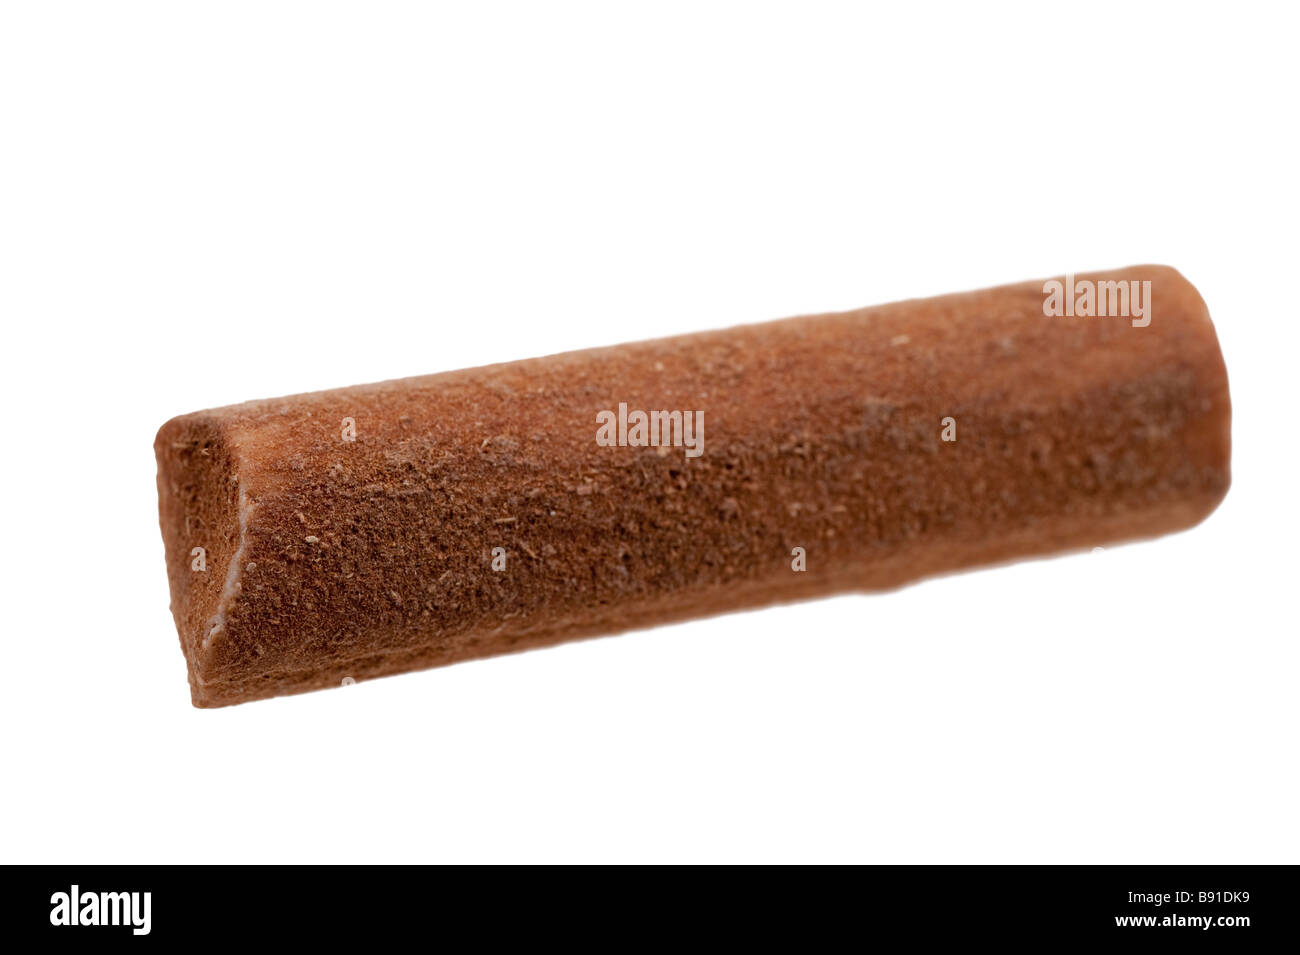 Caramelle alla cannella stick isolato su uno sfondo bianco Foto Stock